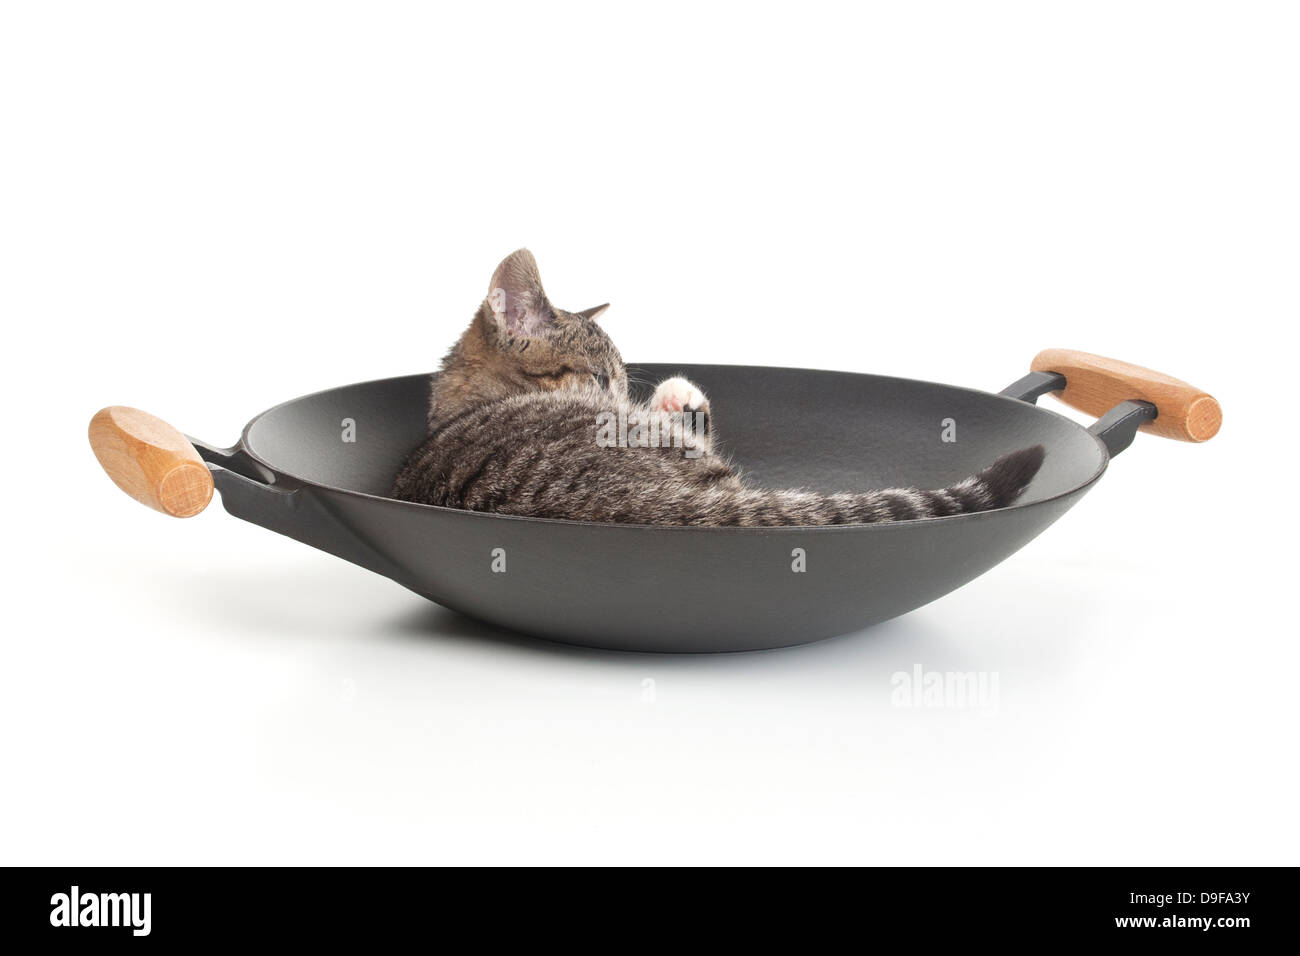 Junge Katze in einem Wok, Spachtelmassen im wok Stockfoto